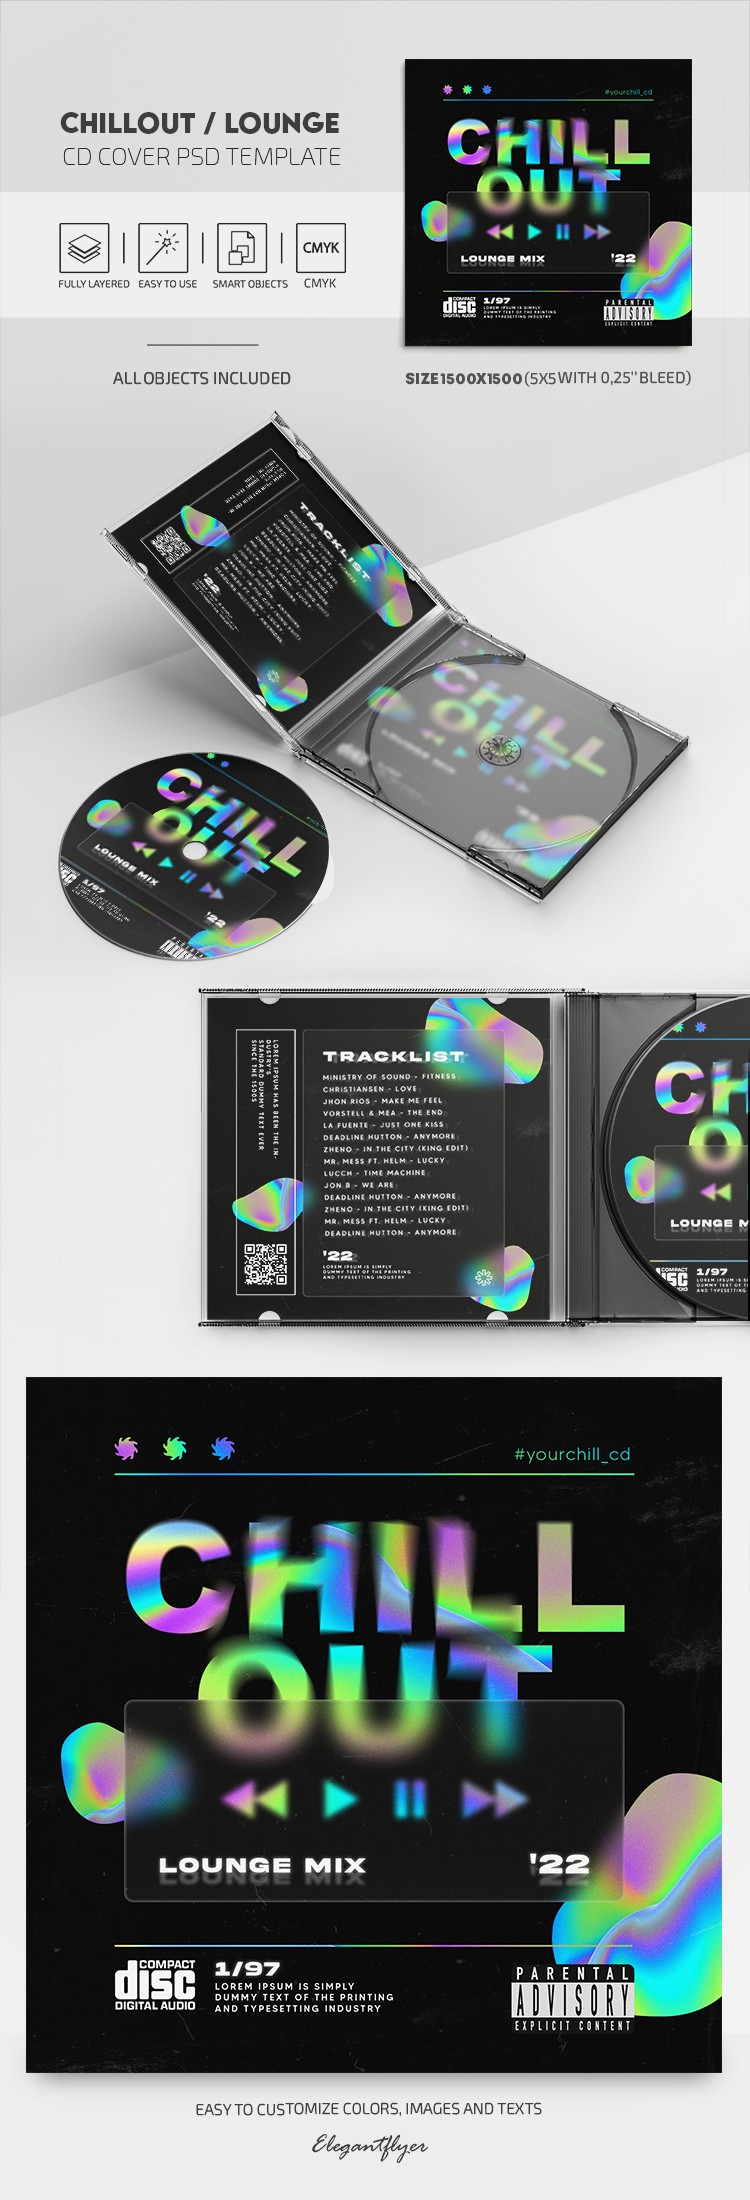 冰镇休闲室CD封面 by ElegantFlyer